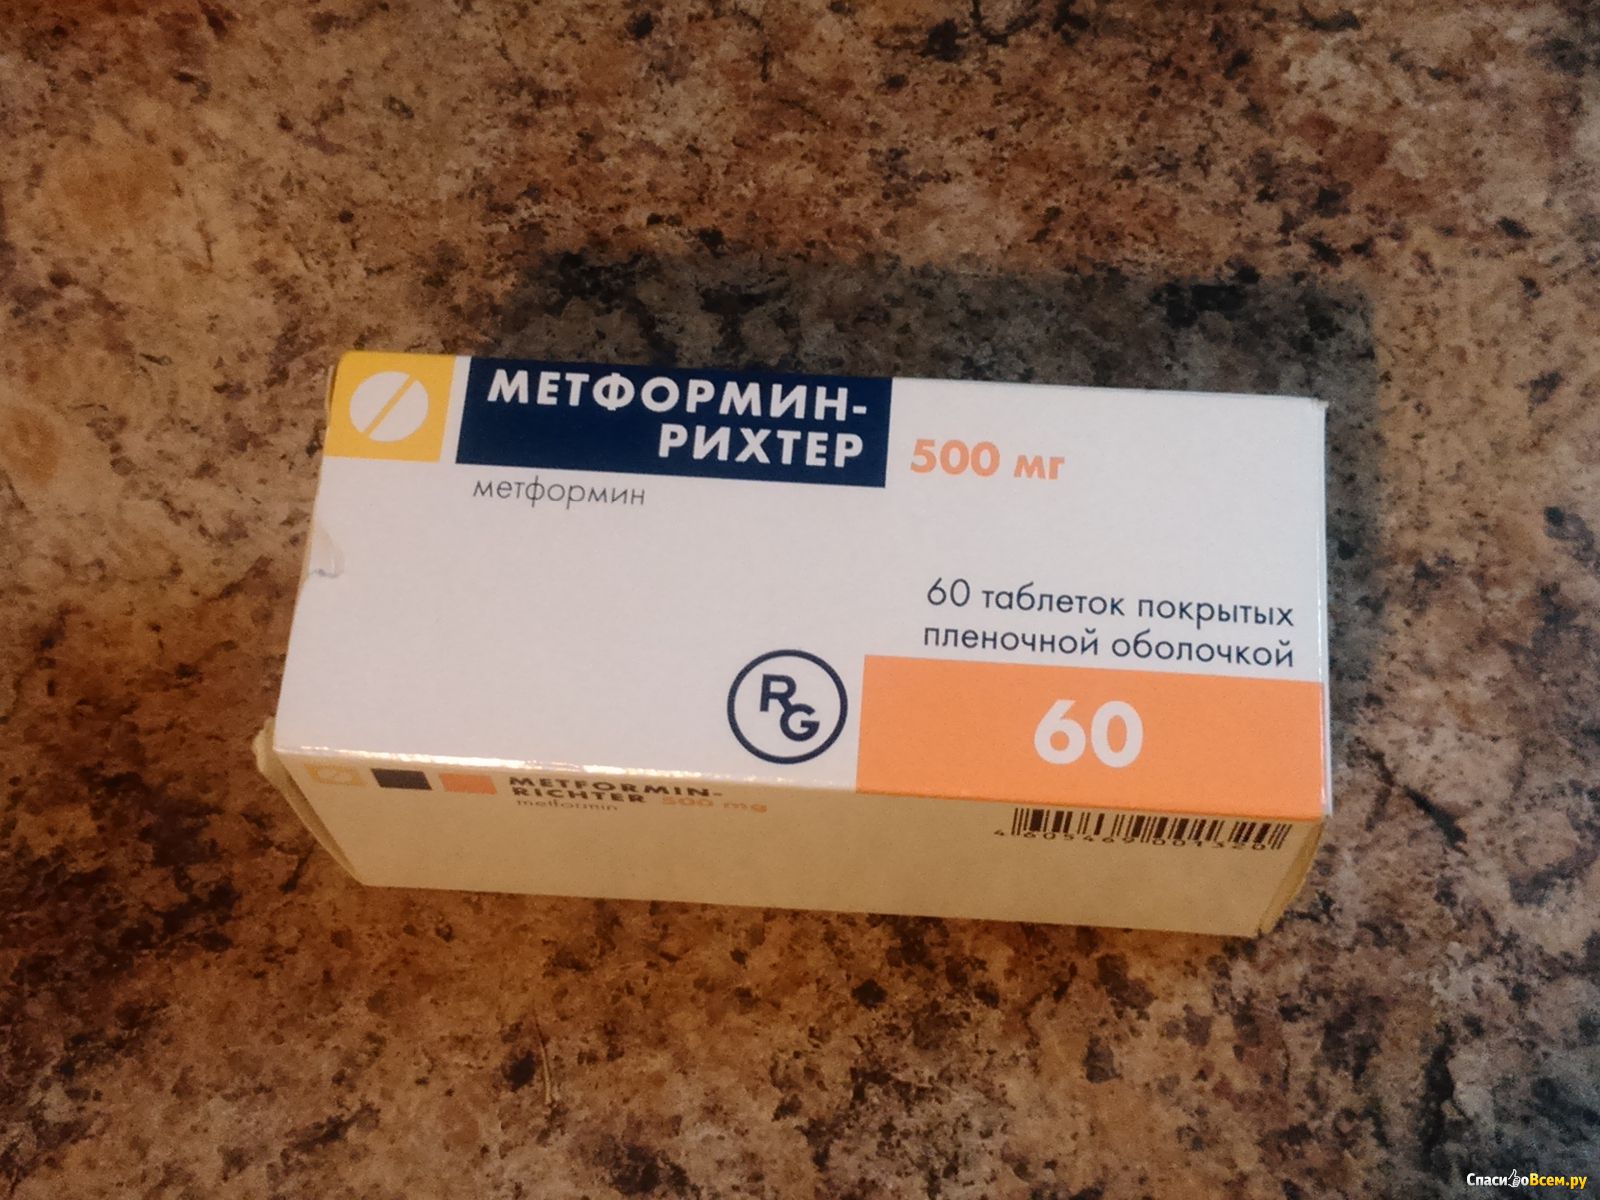 Метформин Рихтер 500 мг производитель